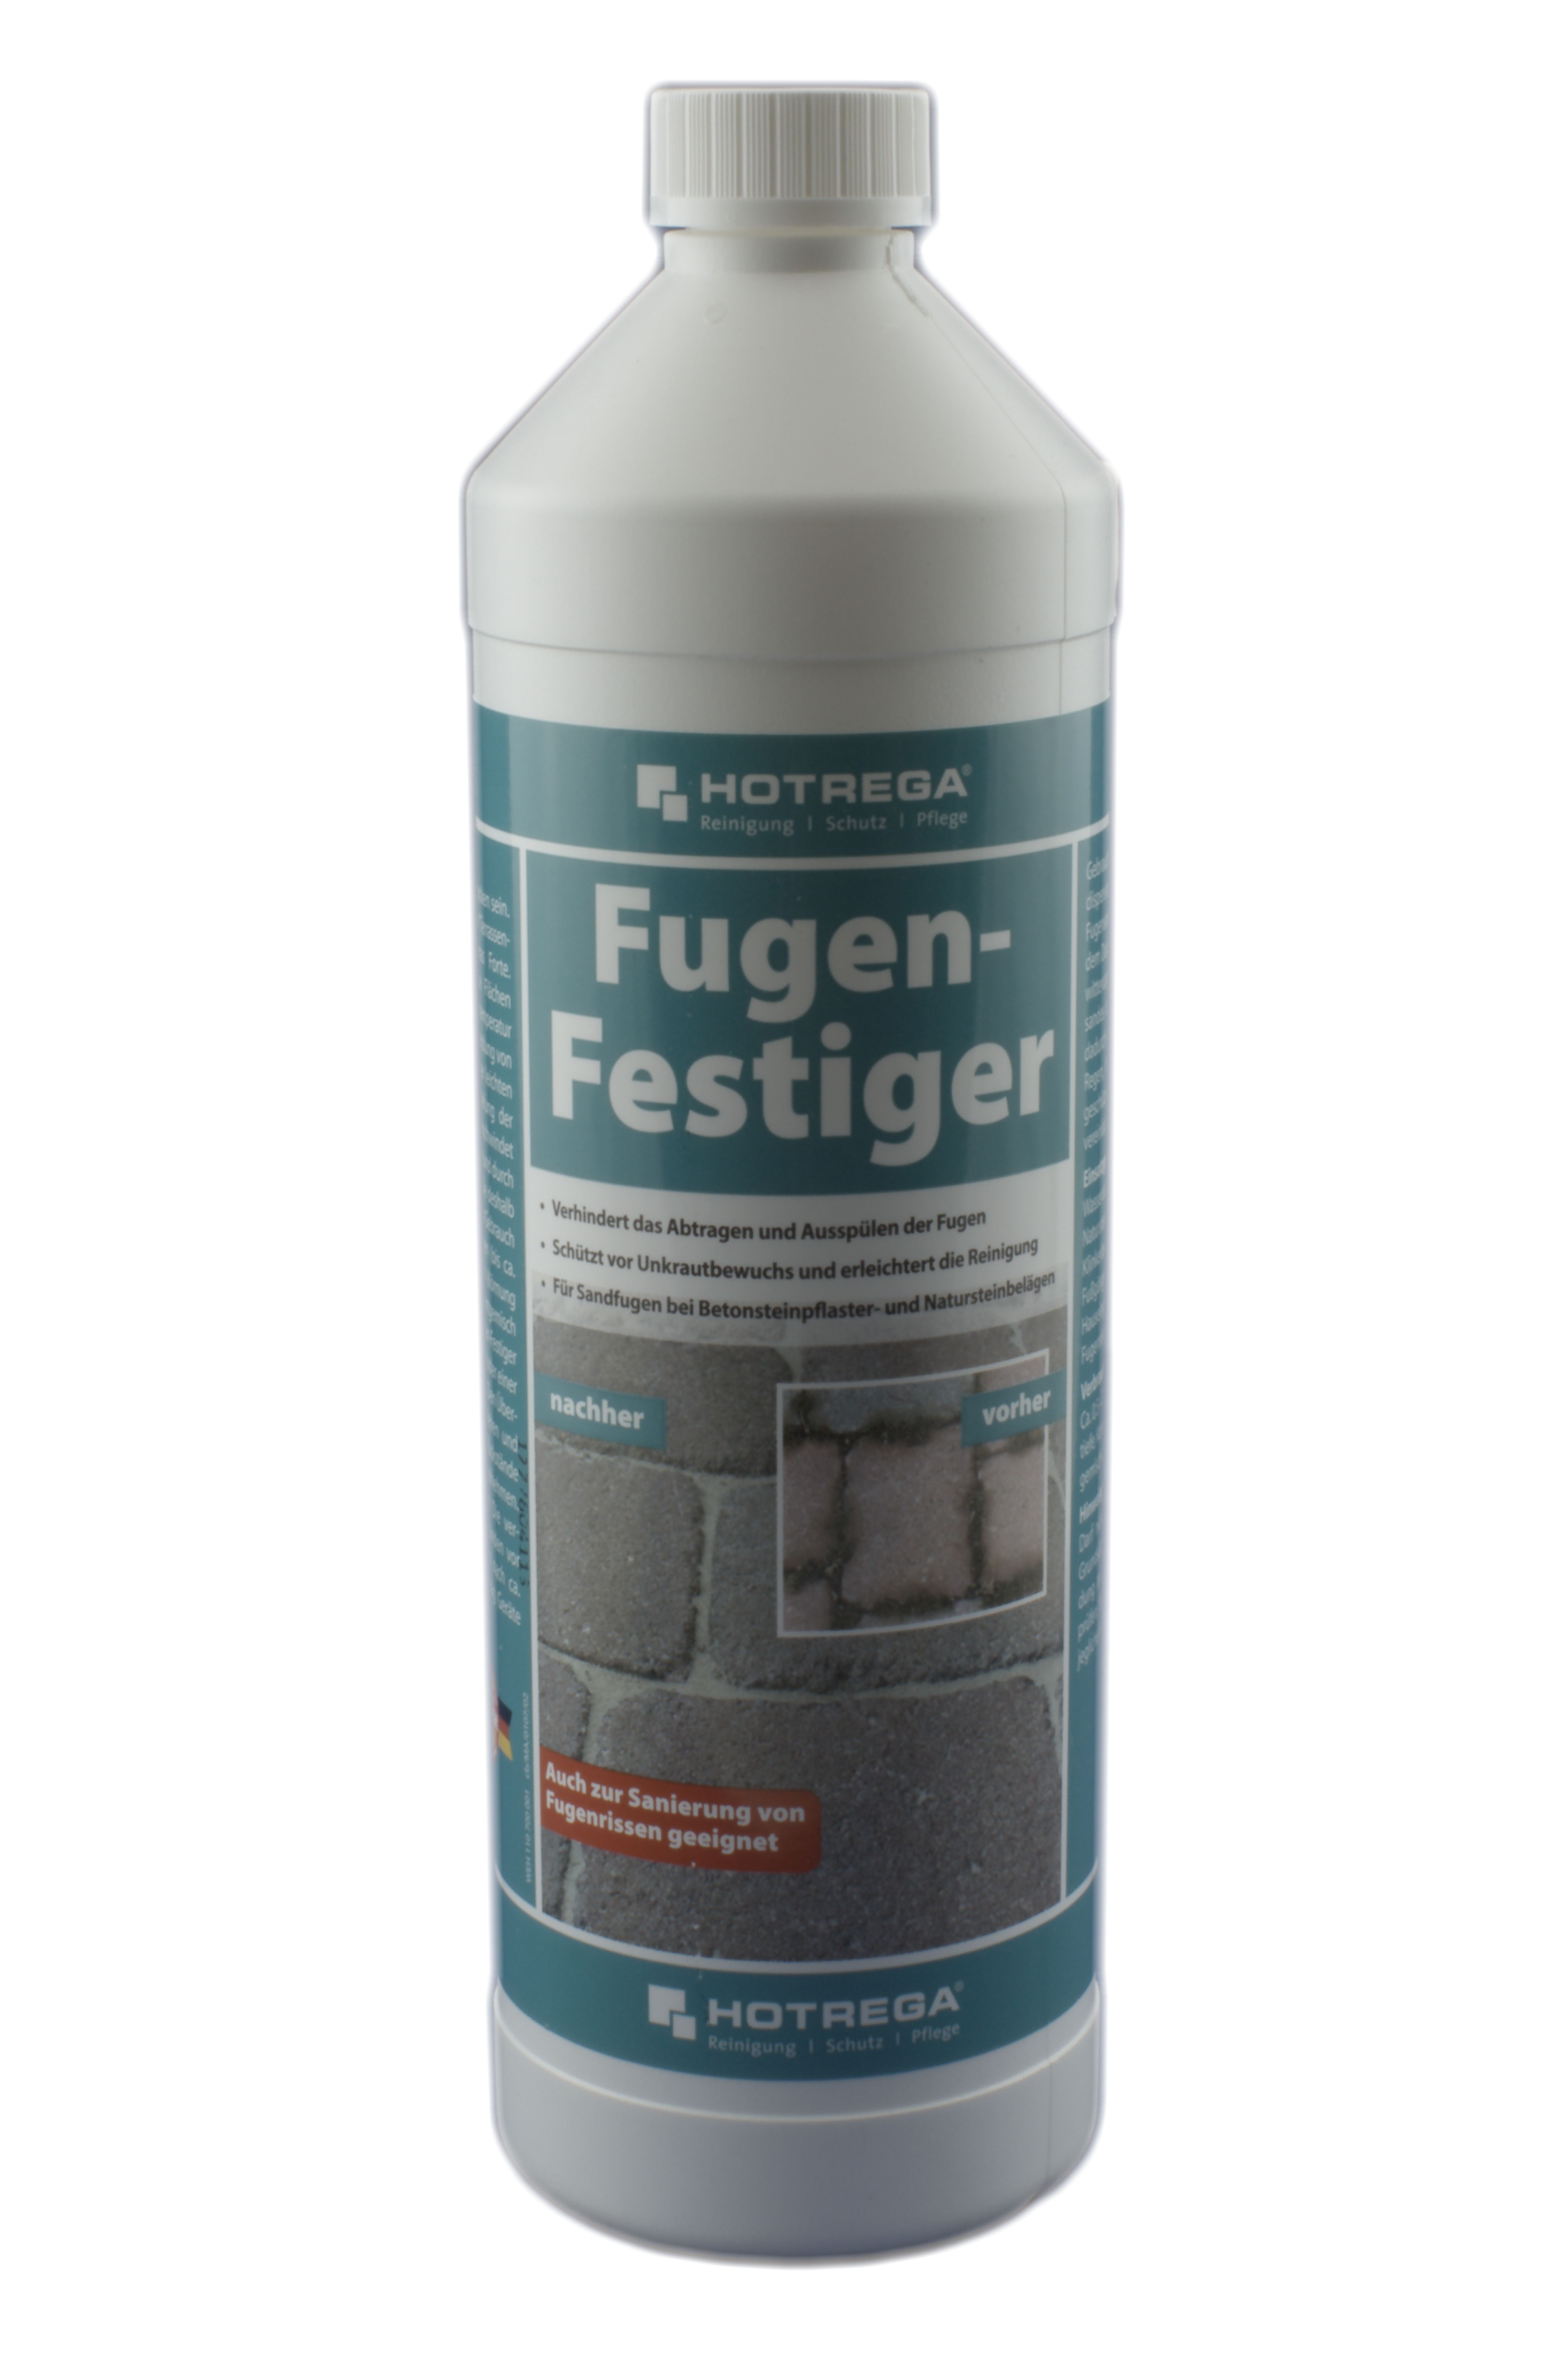 Hotrega Fugen-Festiger 1 ltr.